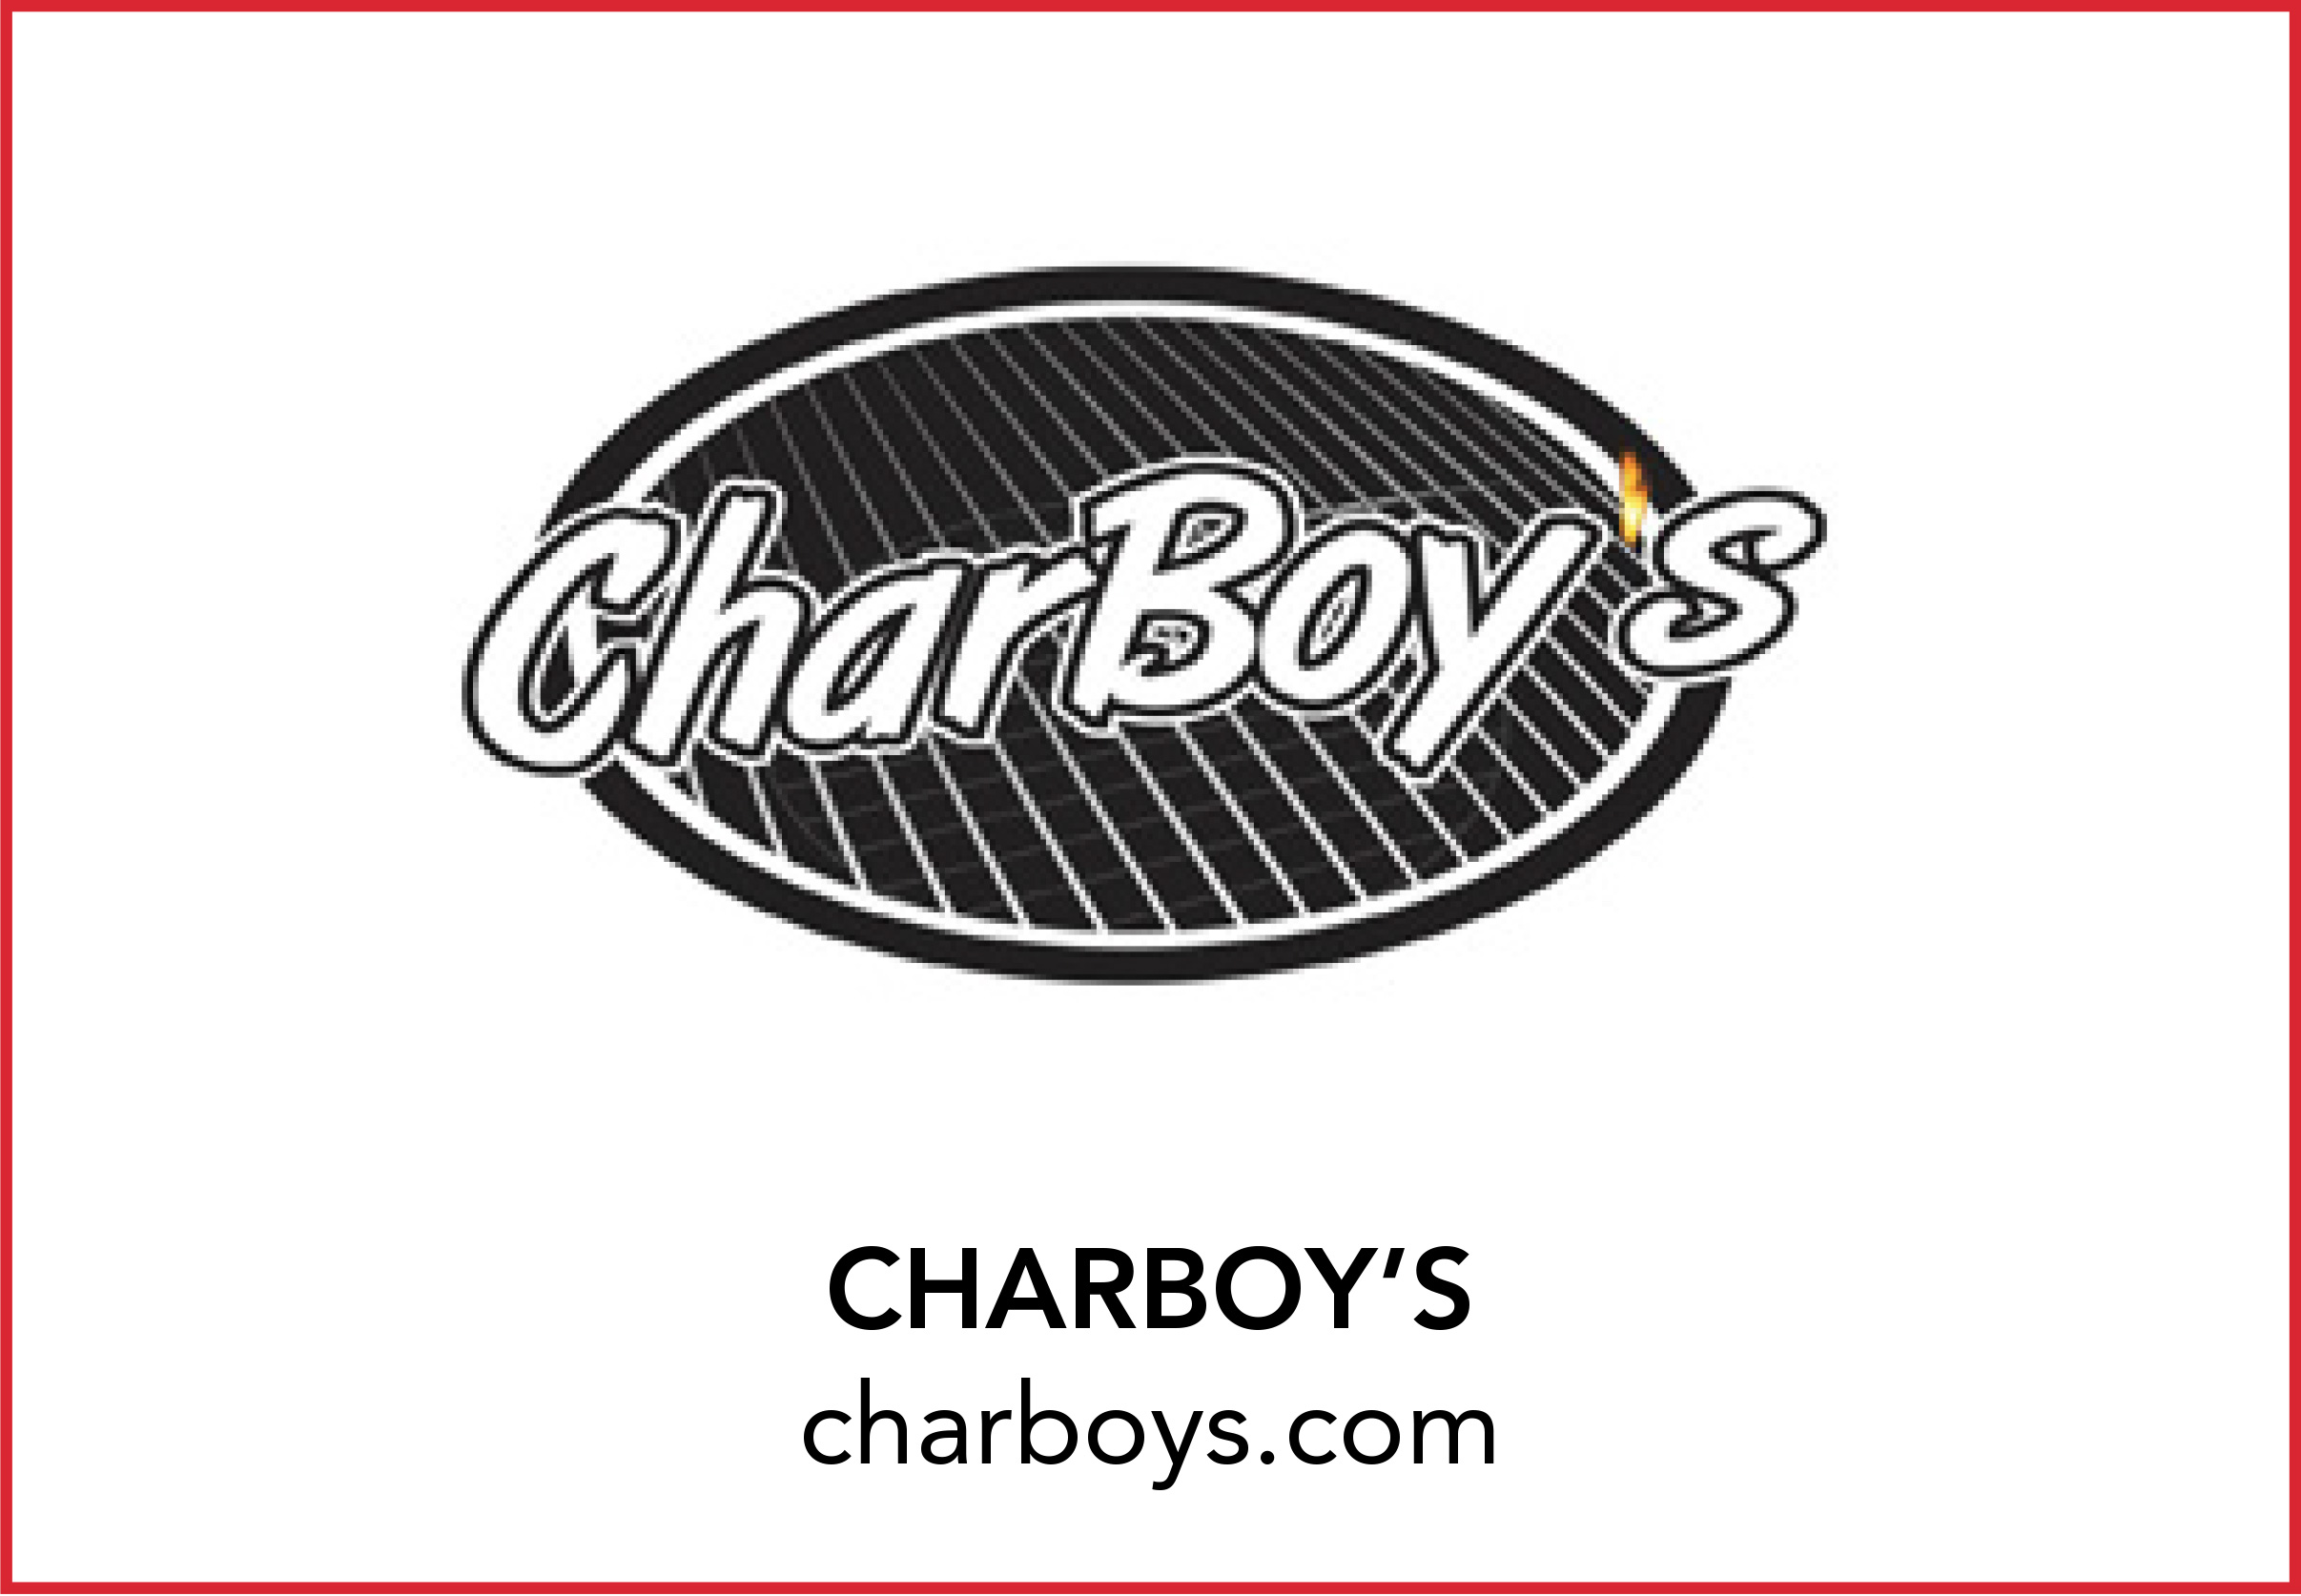 CHARBOY’S